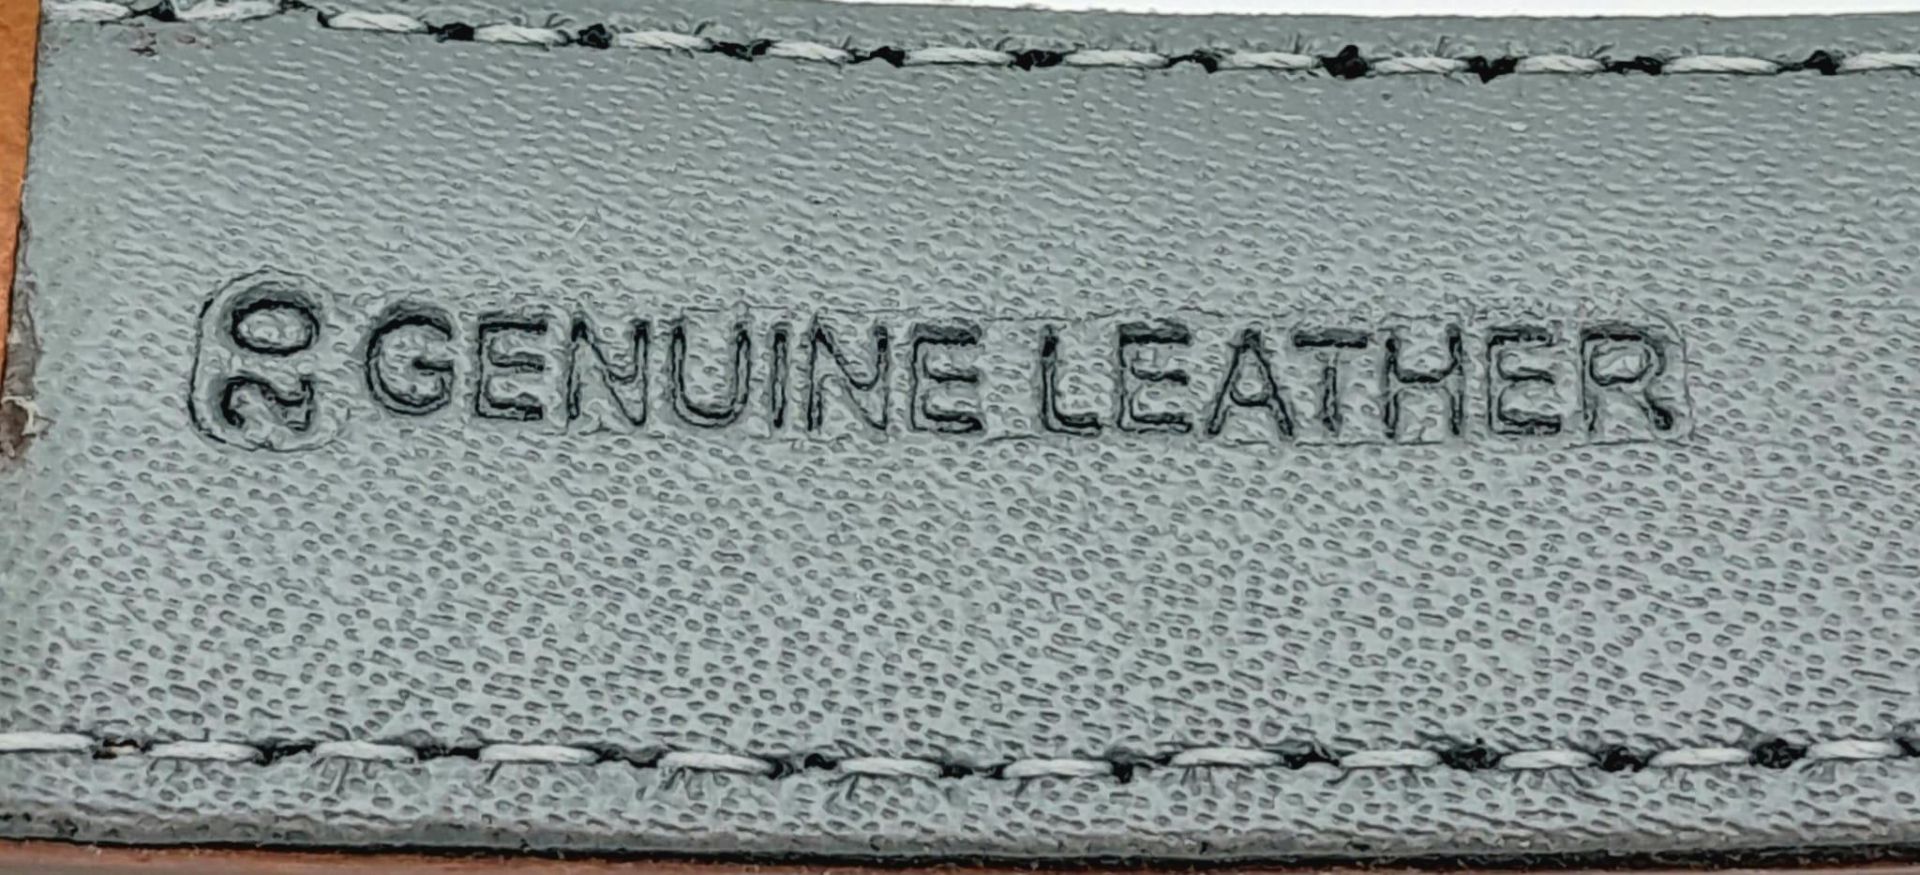 A Vintage Seiko 5 Automatic Gents Watch. Brown leather strap. Stainless steel case - 36mm. Dark grey - Bild 10 aus 11